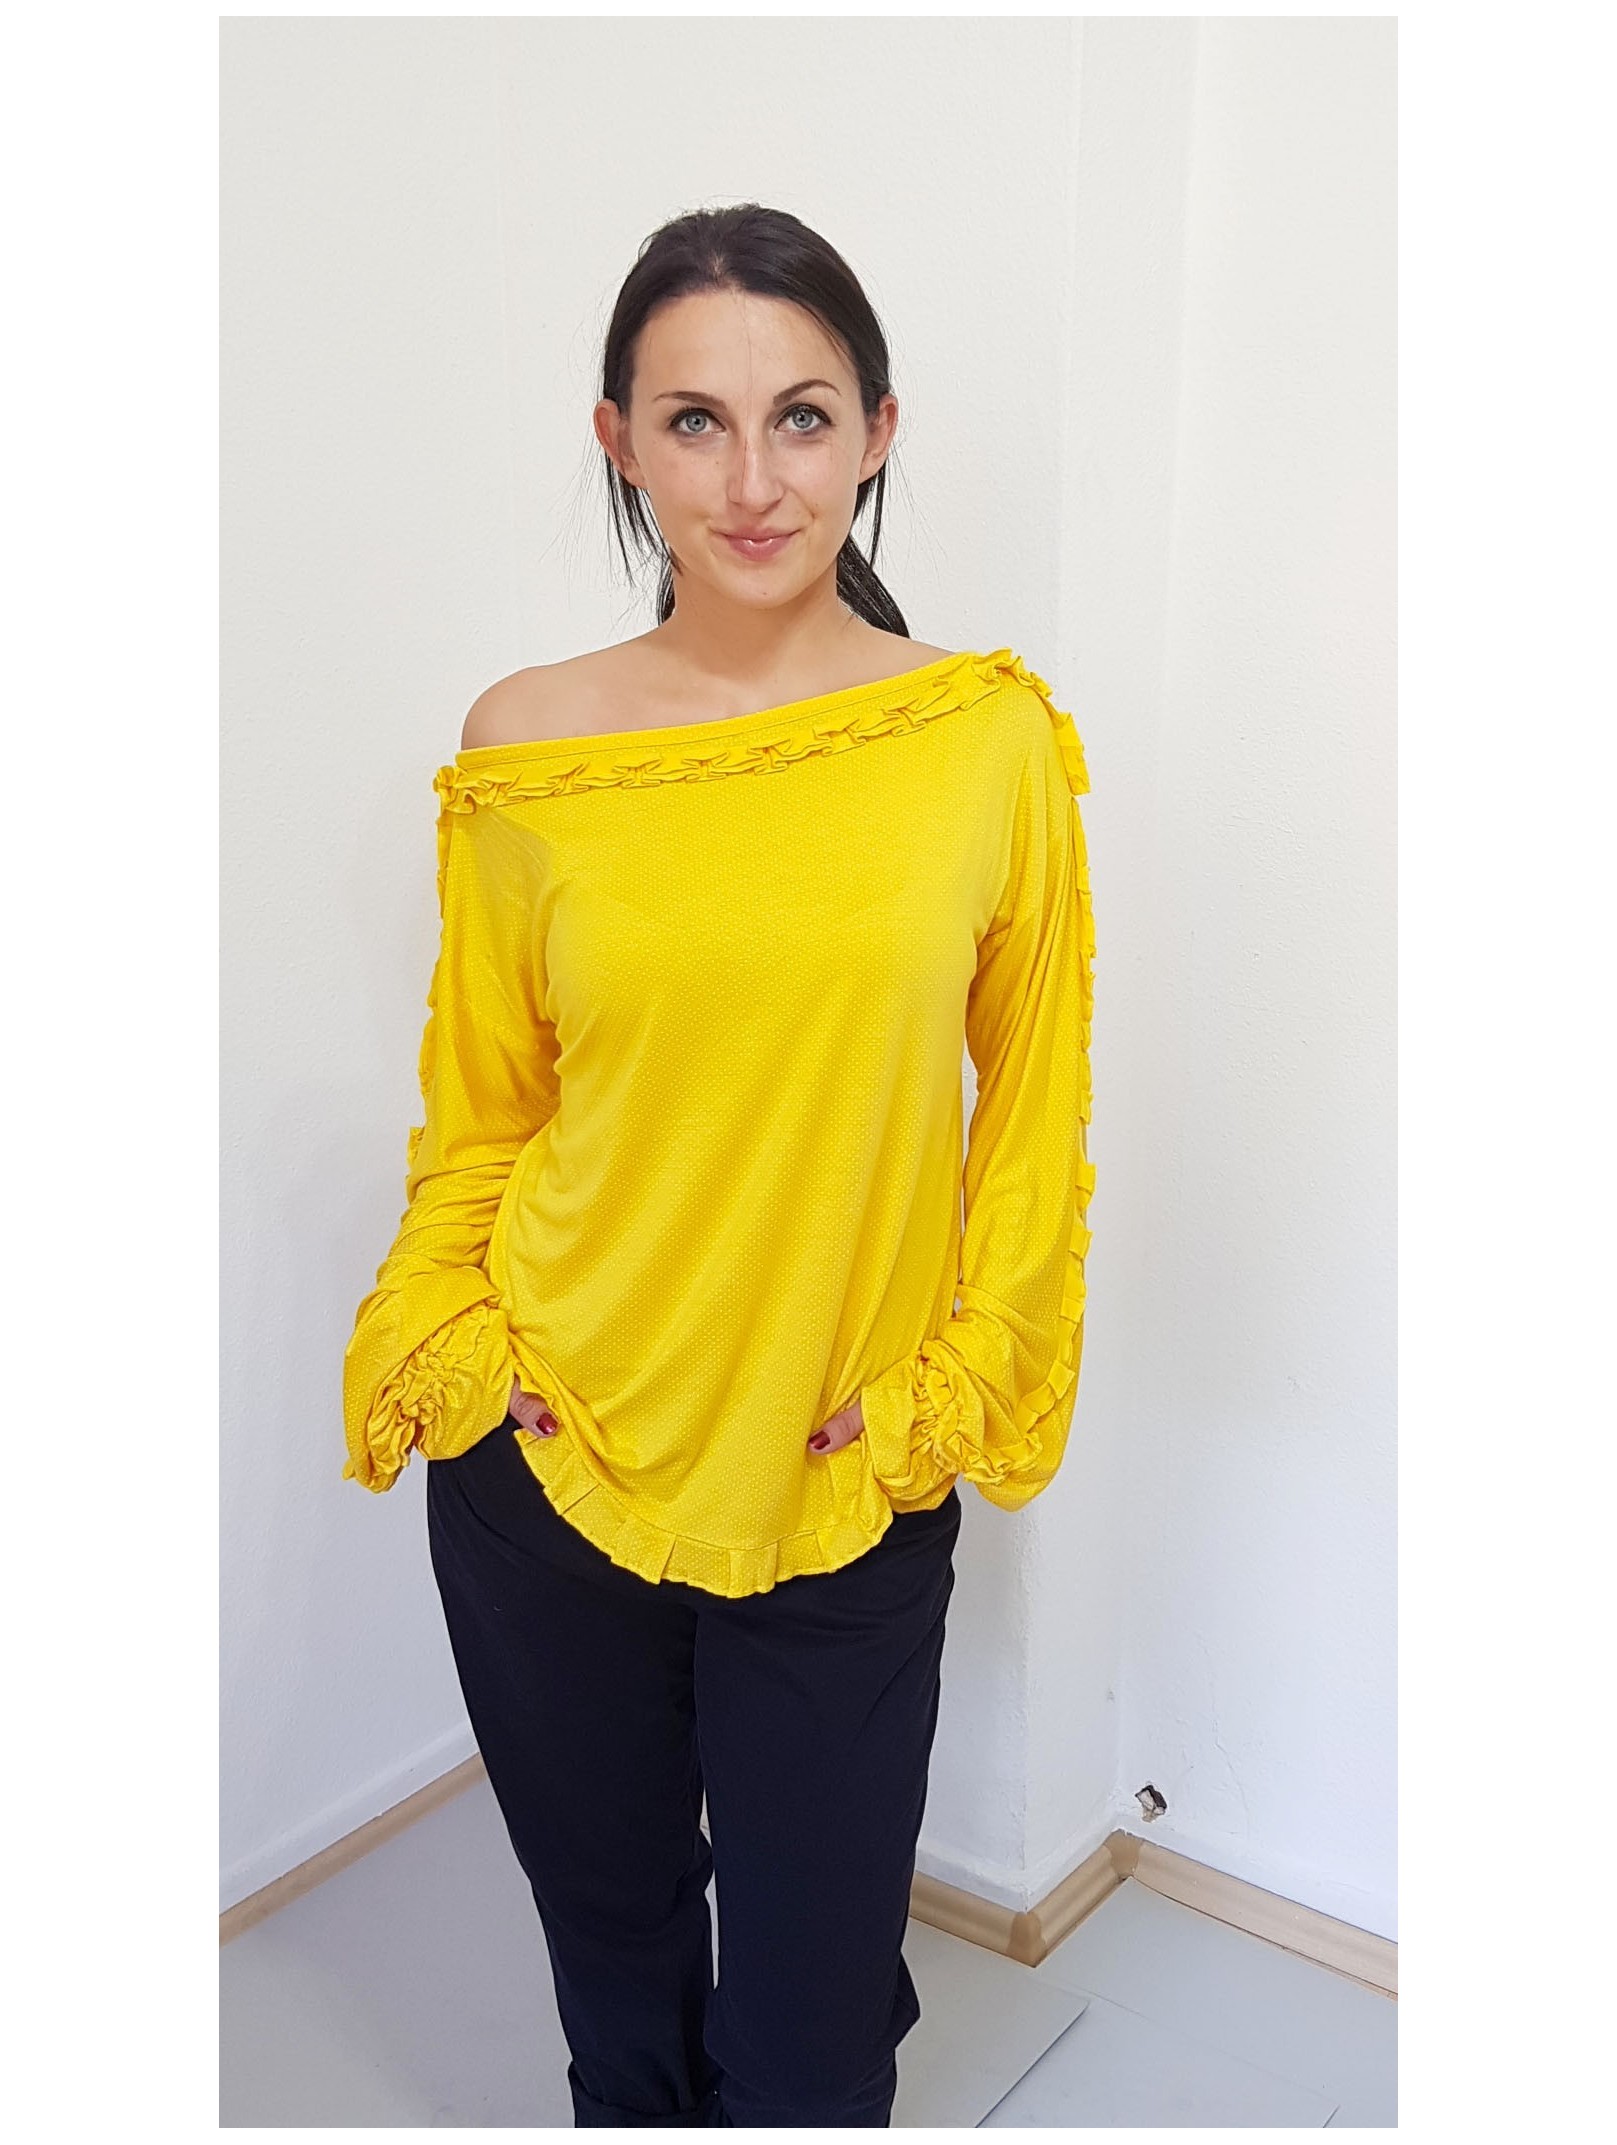 Iza Fabian, lockere Designer  Bluse in Gelb, Falten, Damen Mode.